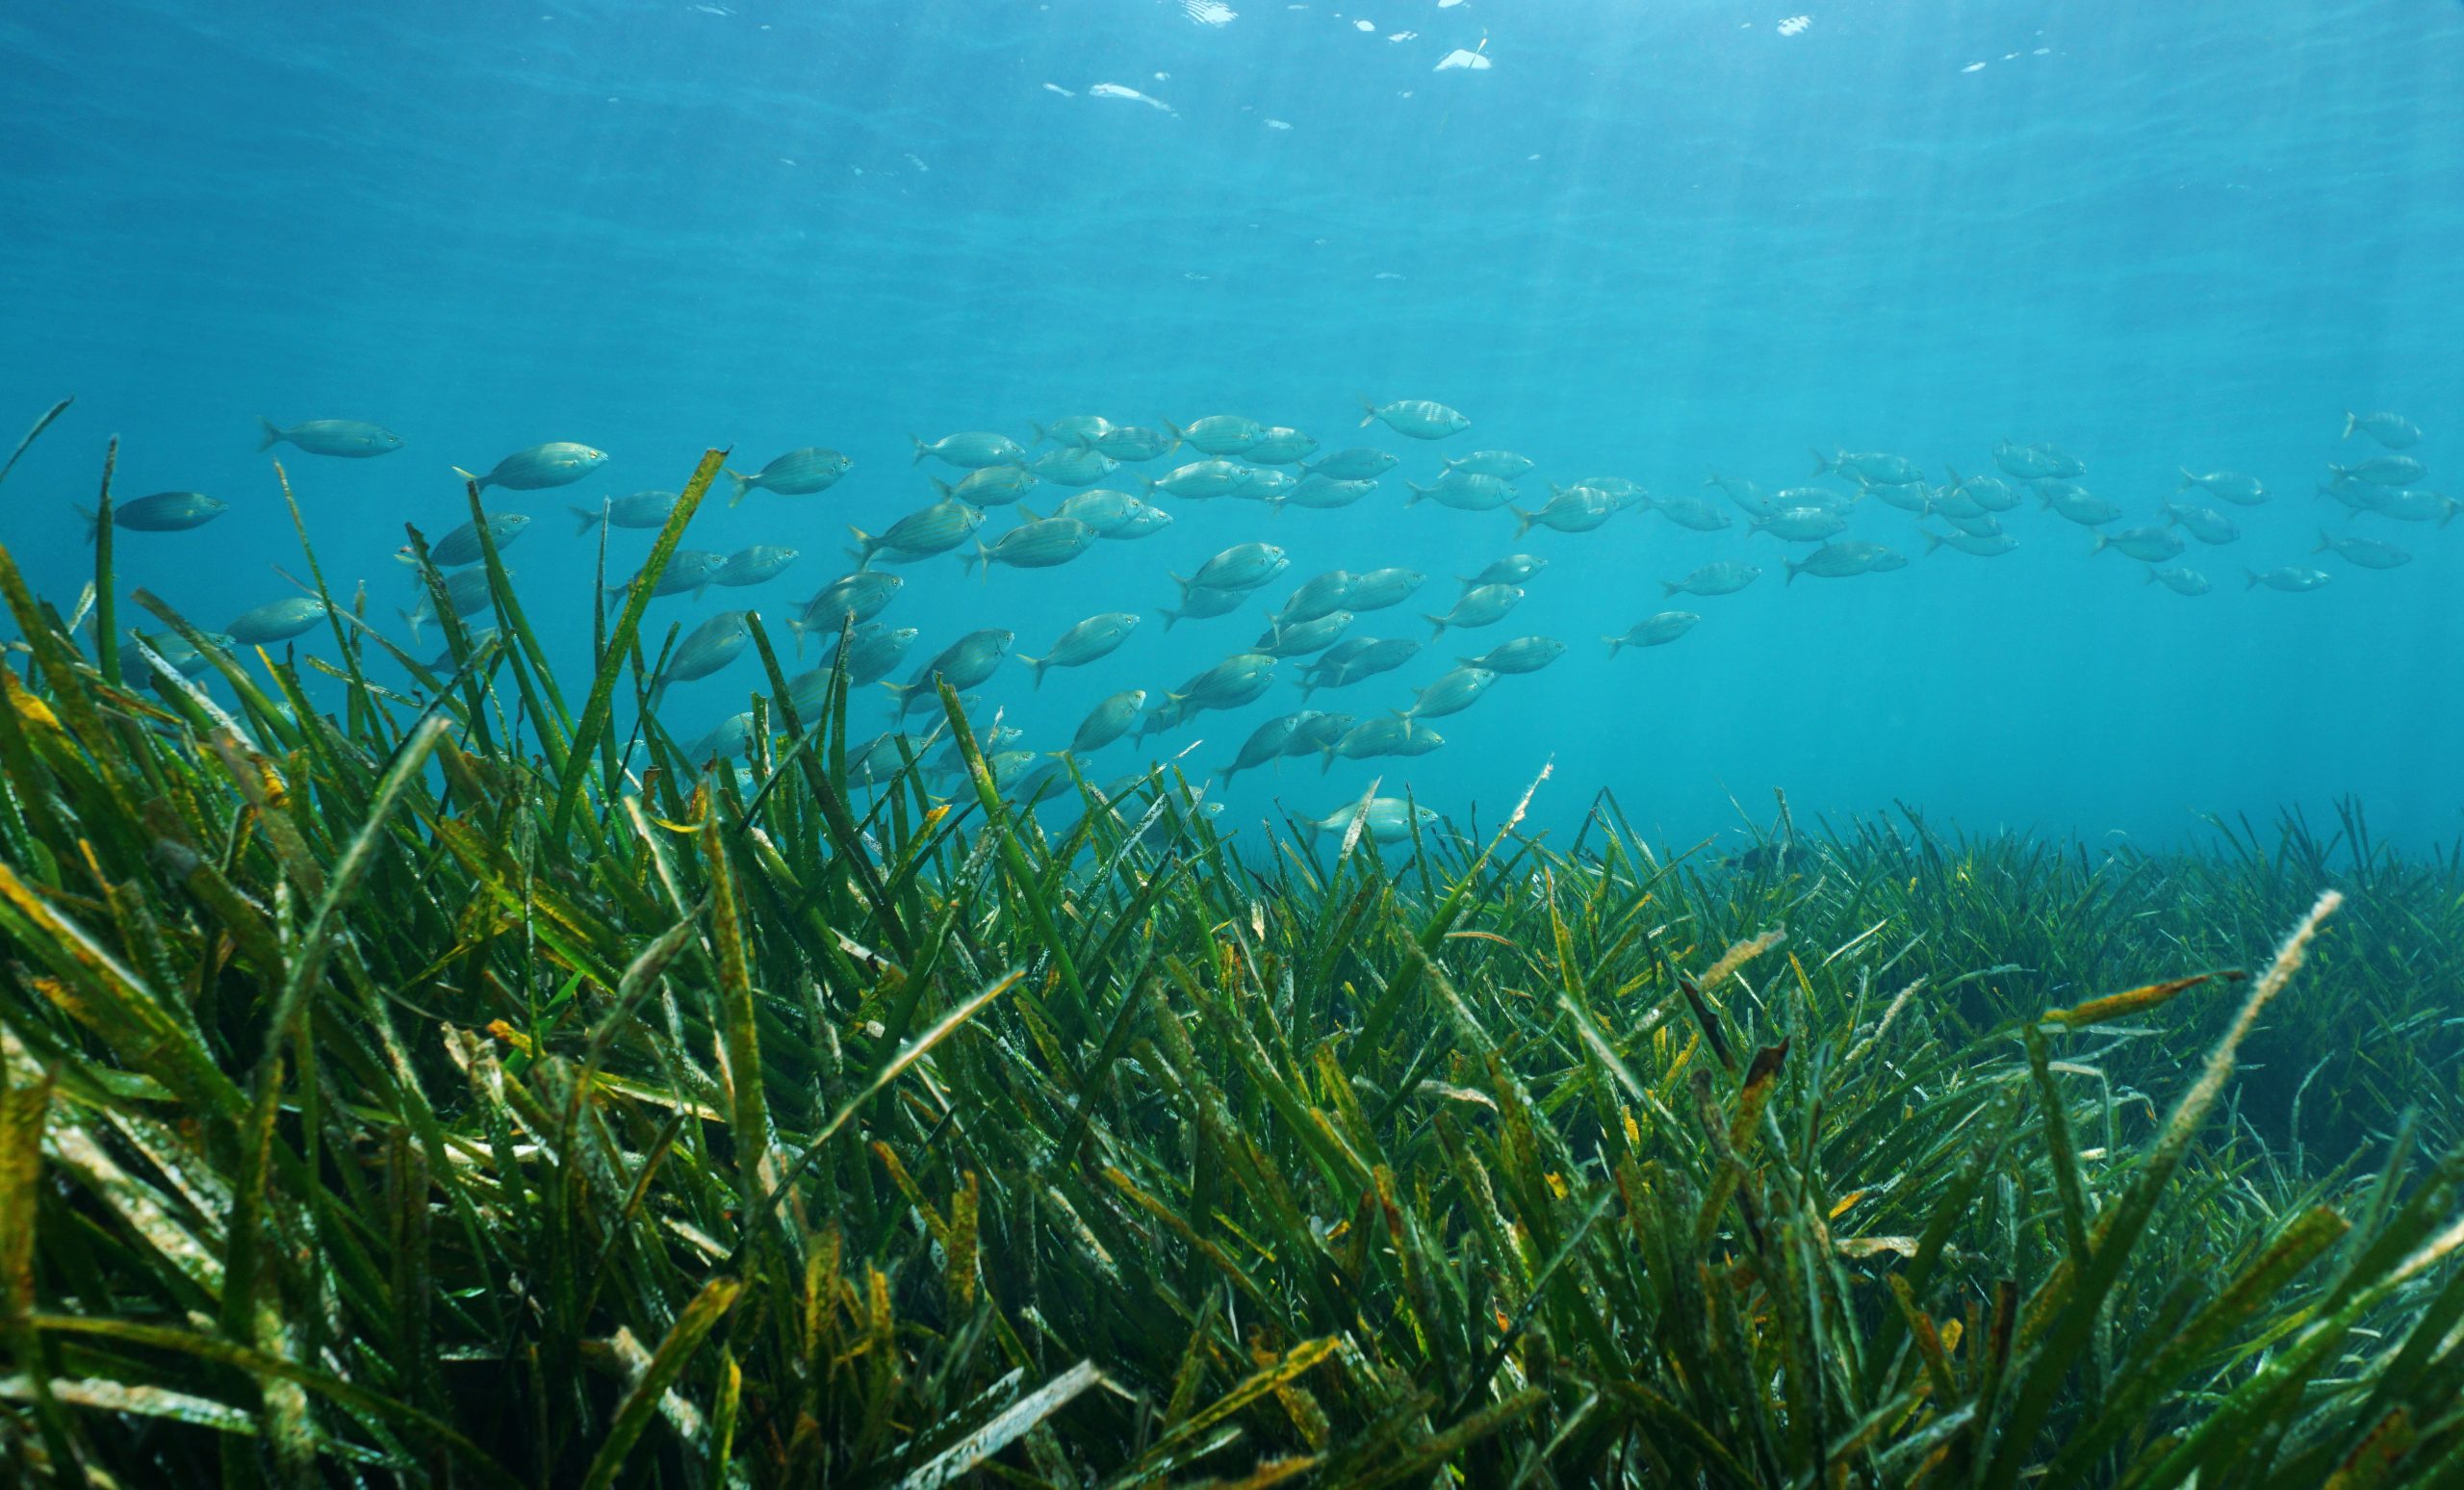 Posidonia oceanica seagrass with a school of fish underwater in the Mediterranean sea, Catalonia, Llafranc, Costa Brava, Spain